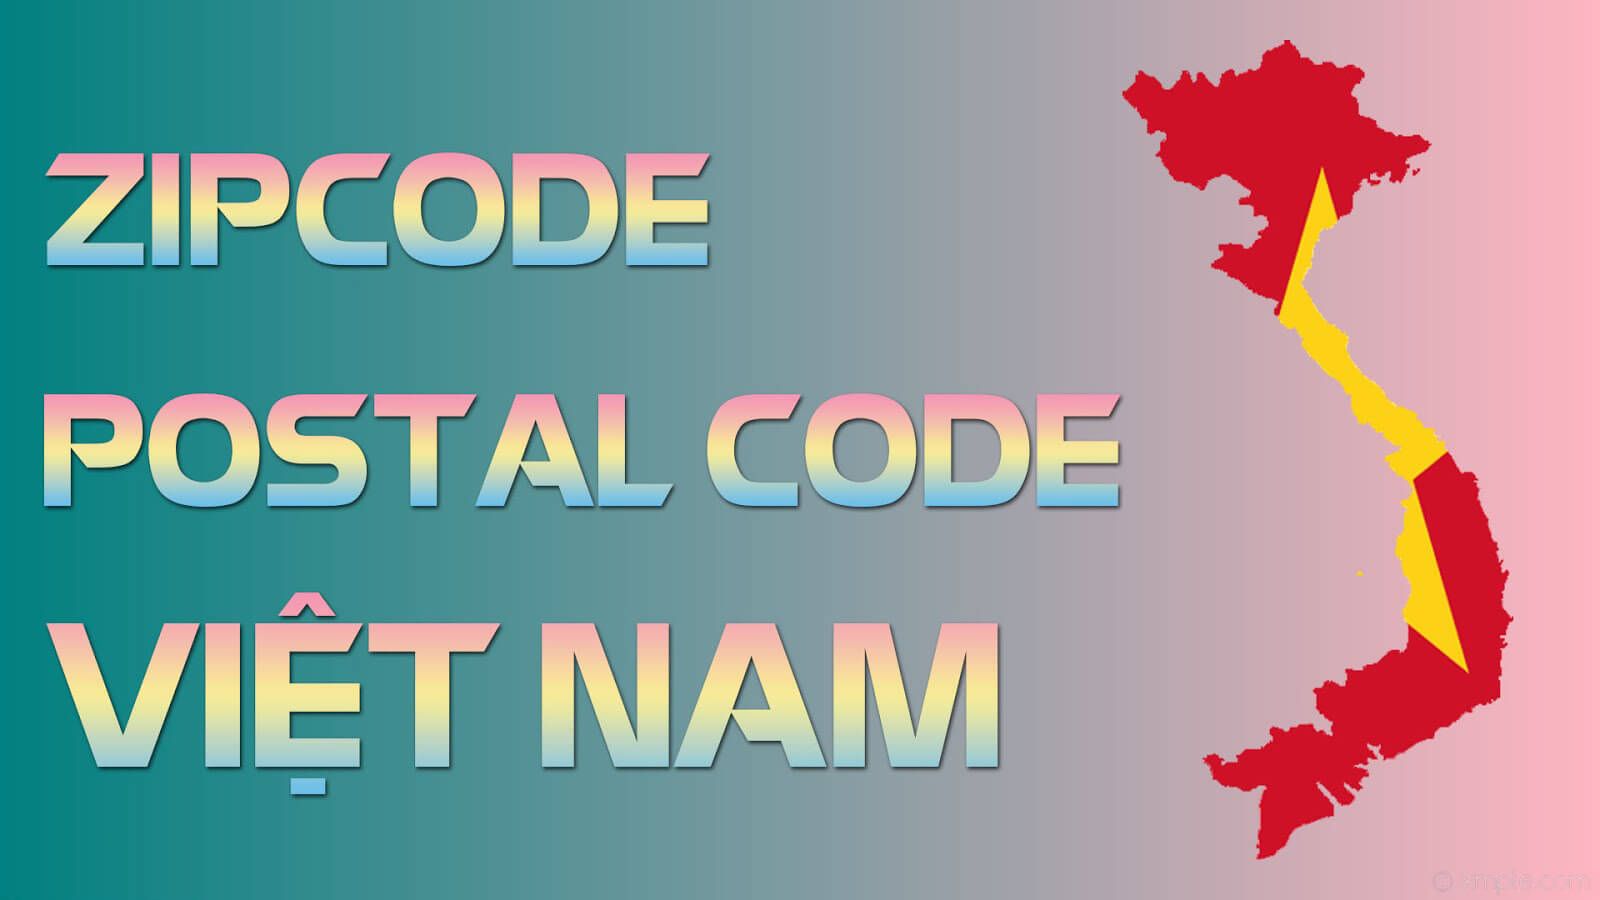 Zipcode mới nhất của Việt Nam và Postcode chính xác từng khu vực